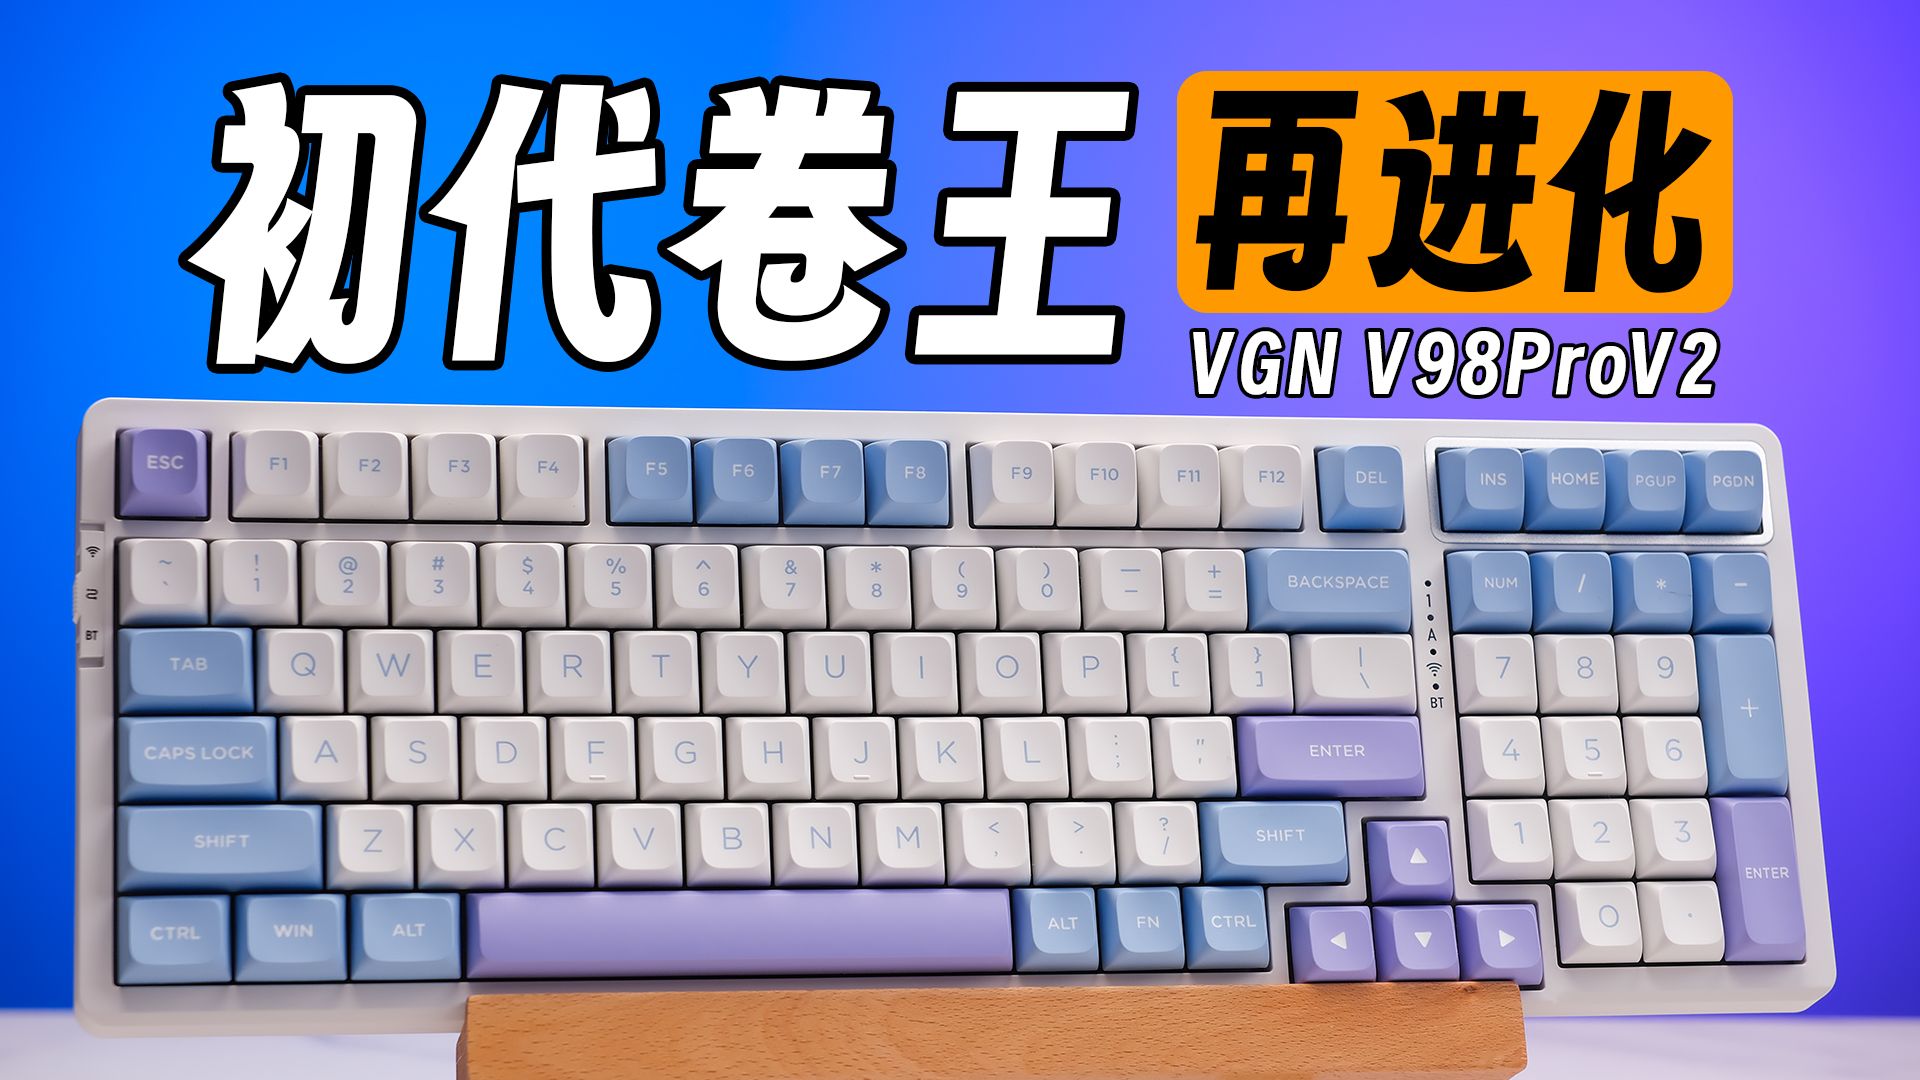 那个曾经卖断了一万次货的卷王键盘，居然出了升级版？VGN V98Pro V2使用体验分享